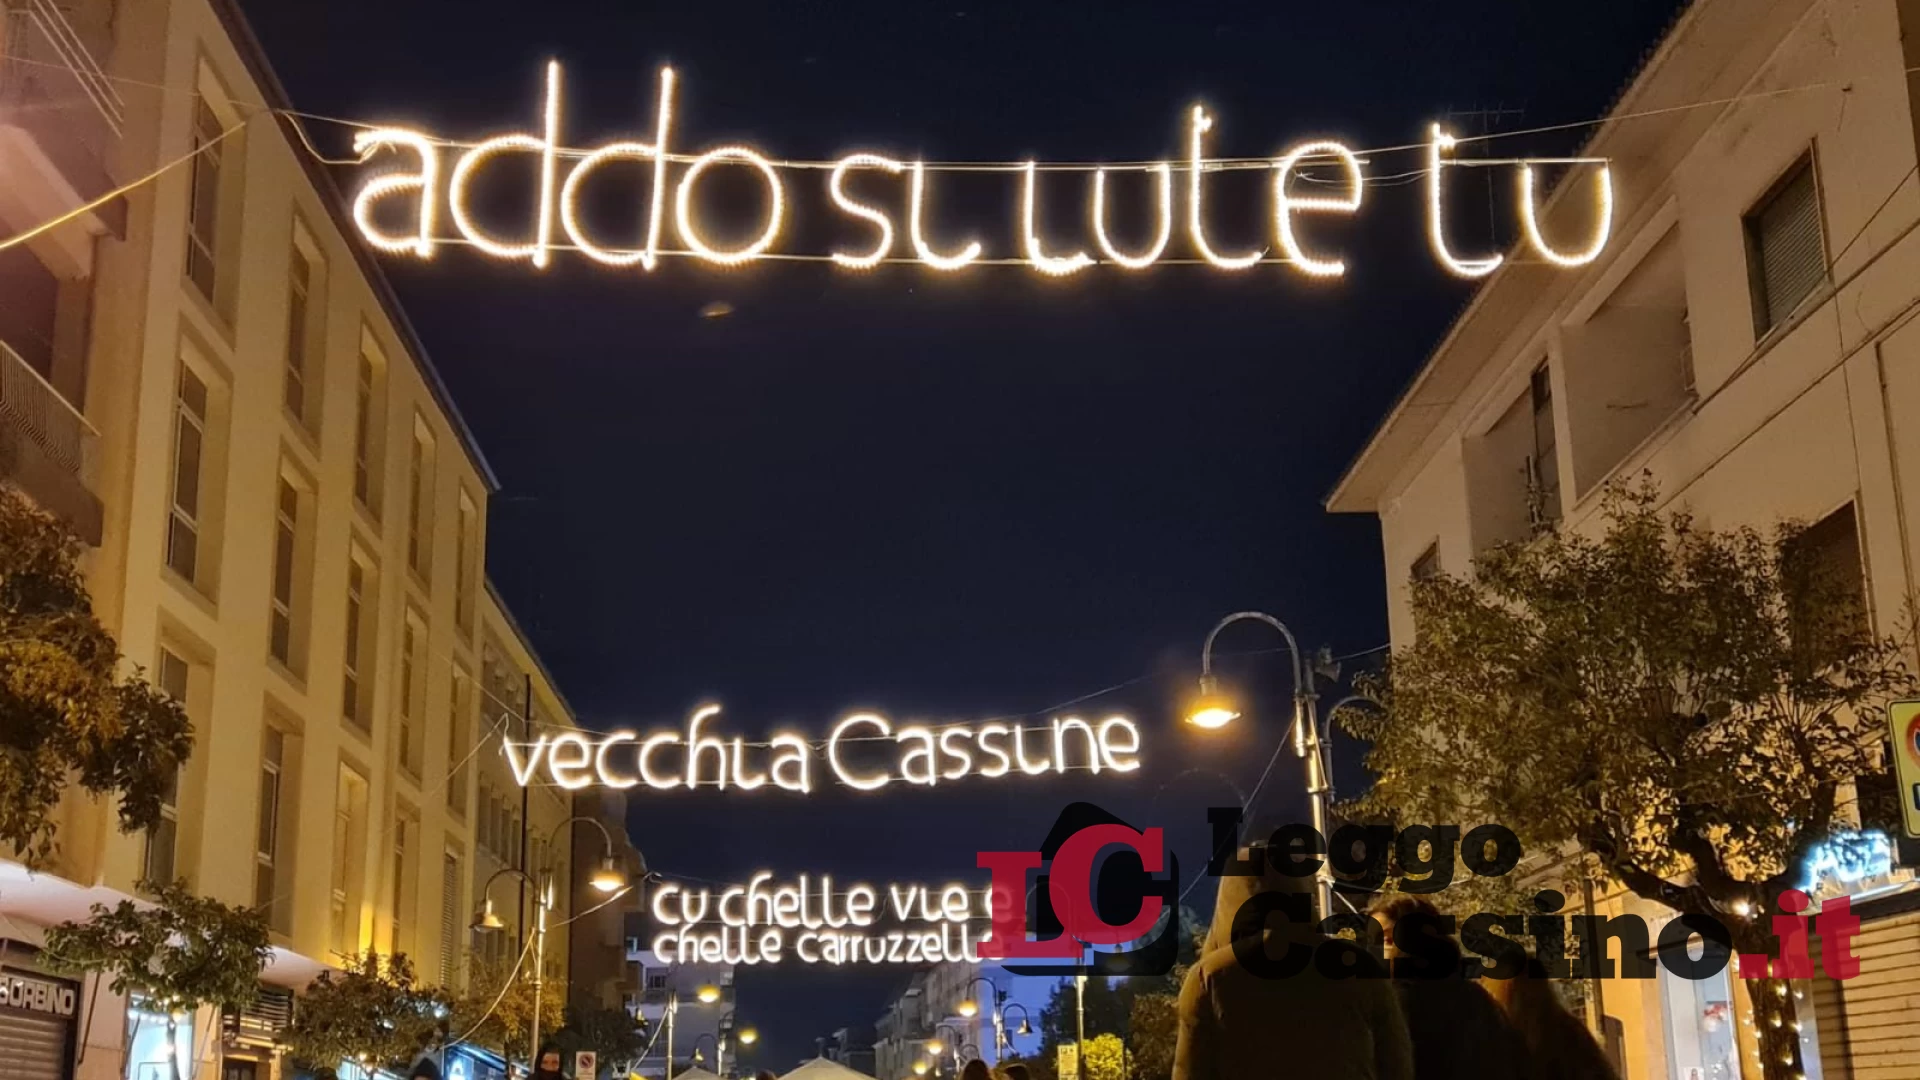 La storia di Cassino illumina la città